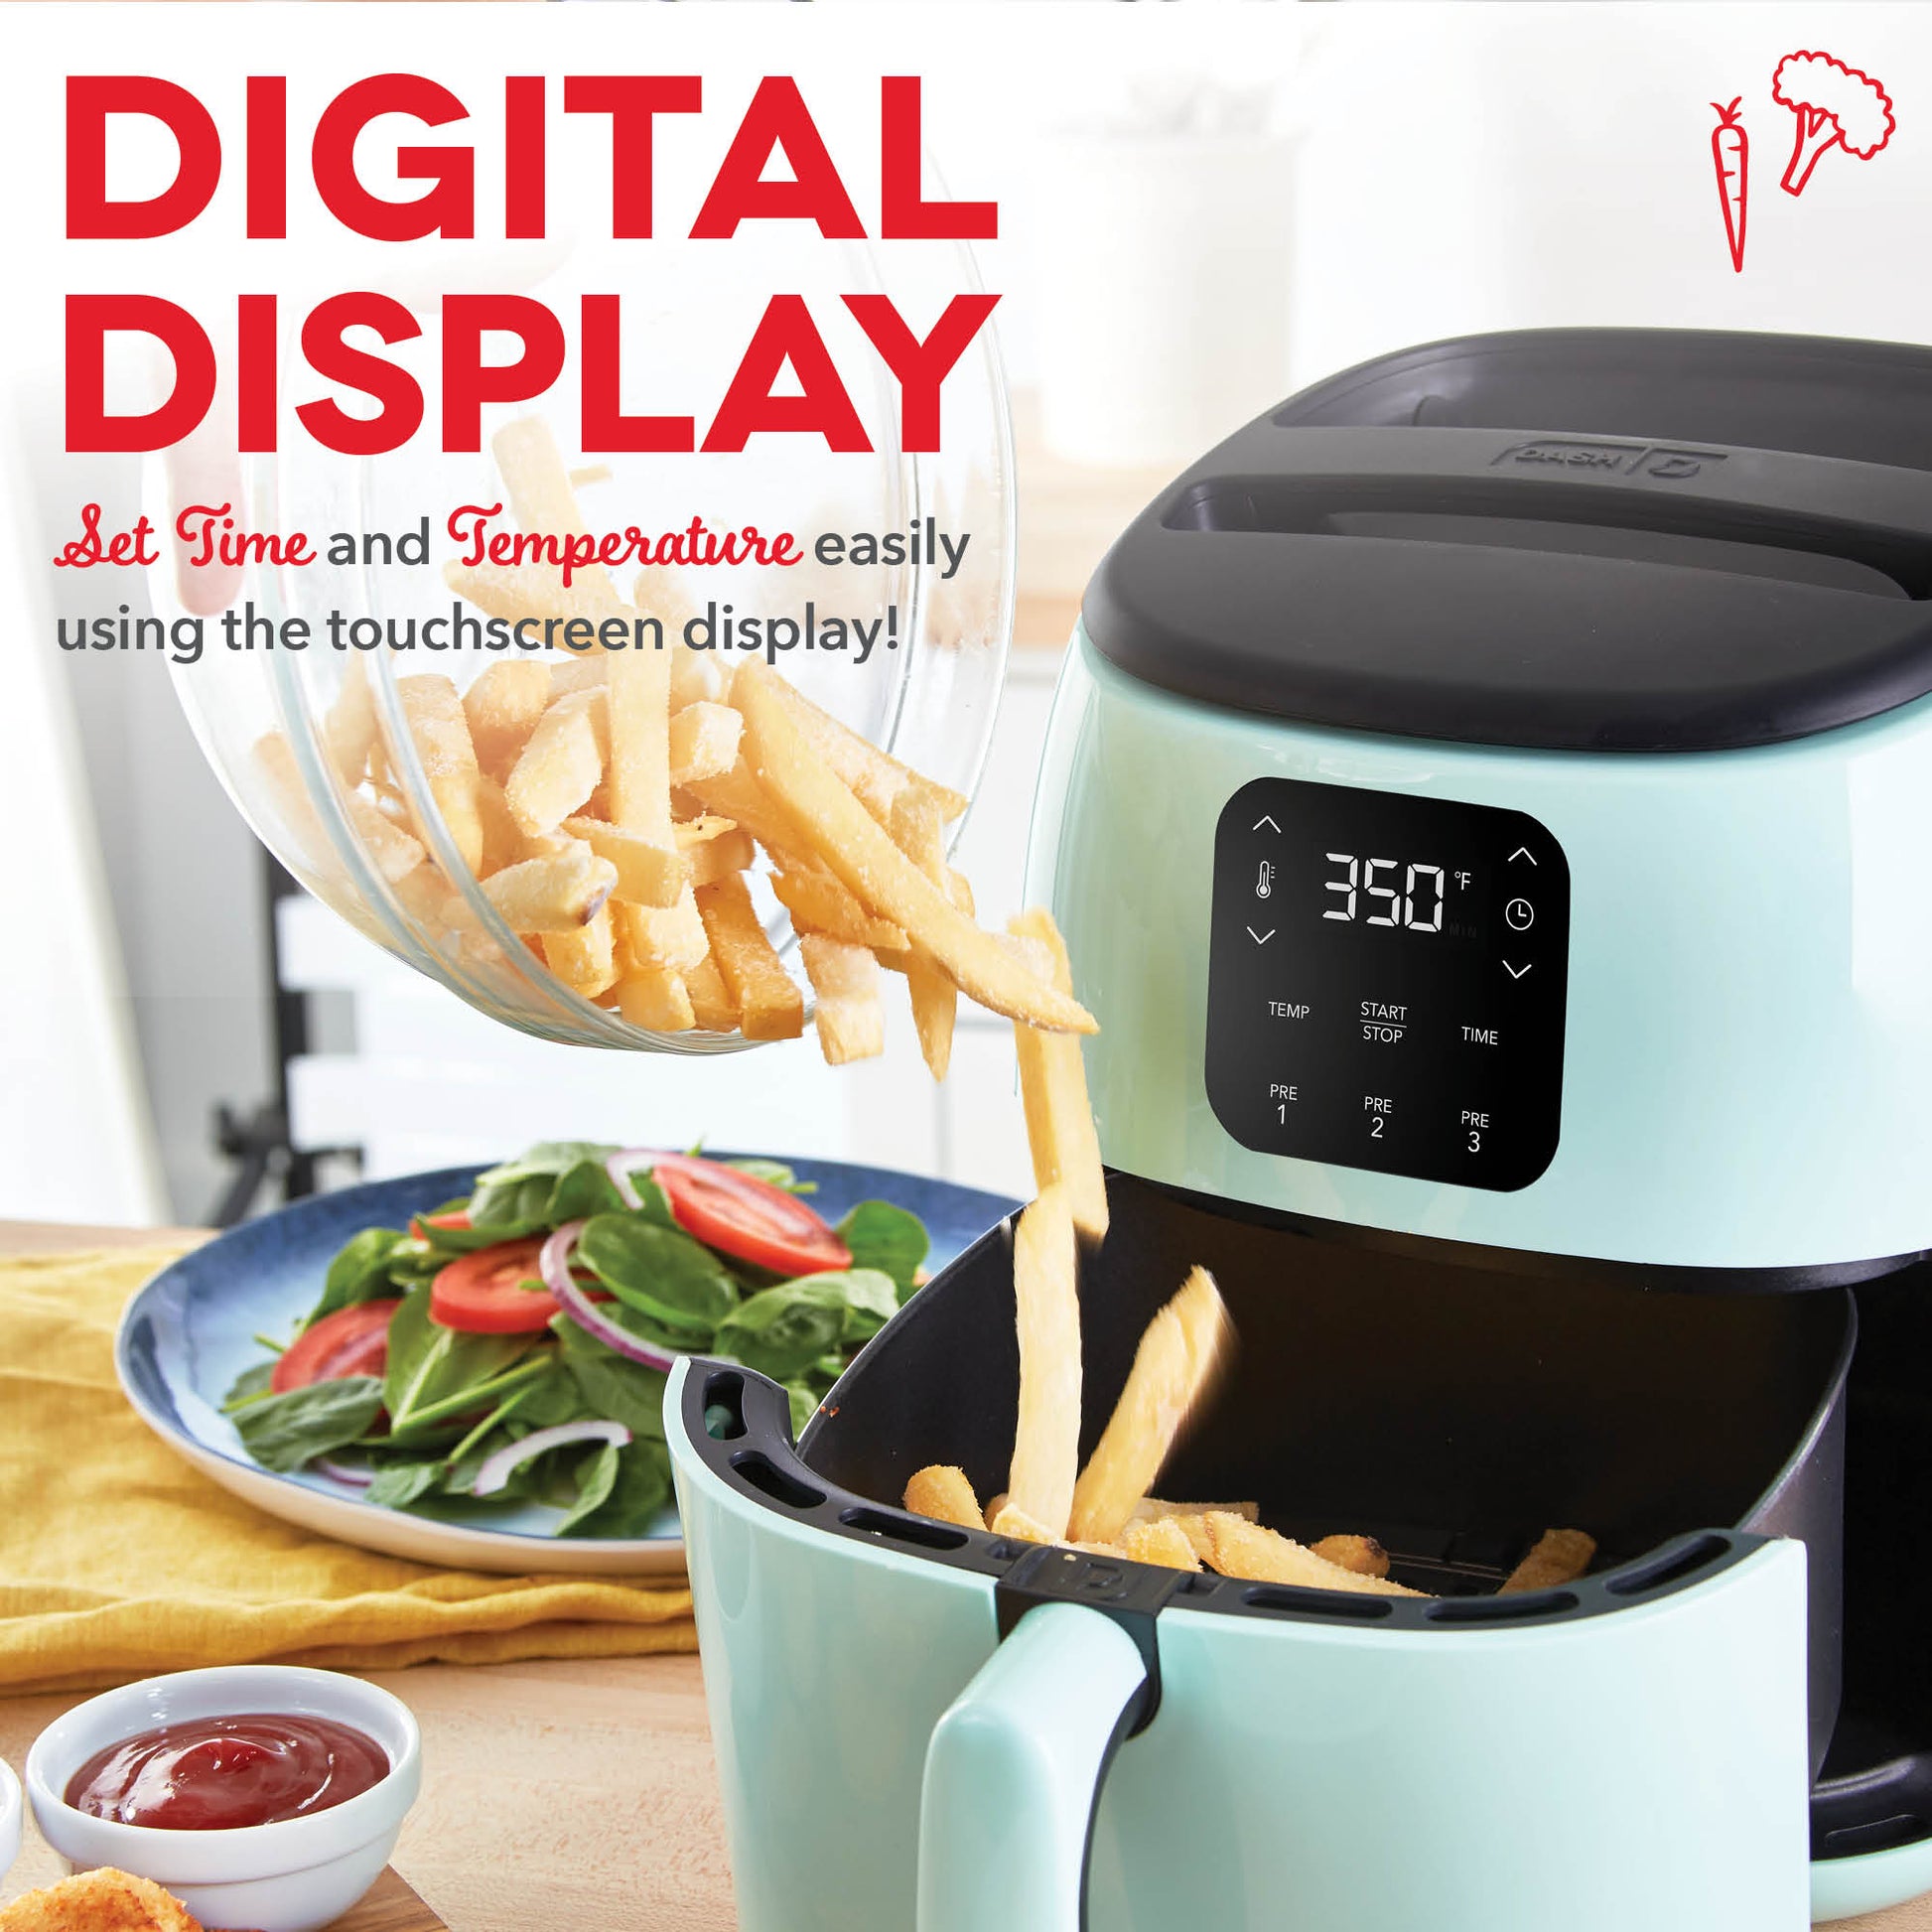 Digital Tasti-Crisp™ Air Fryer 2.6QT